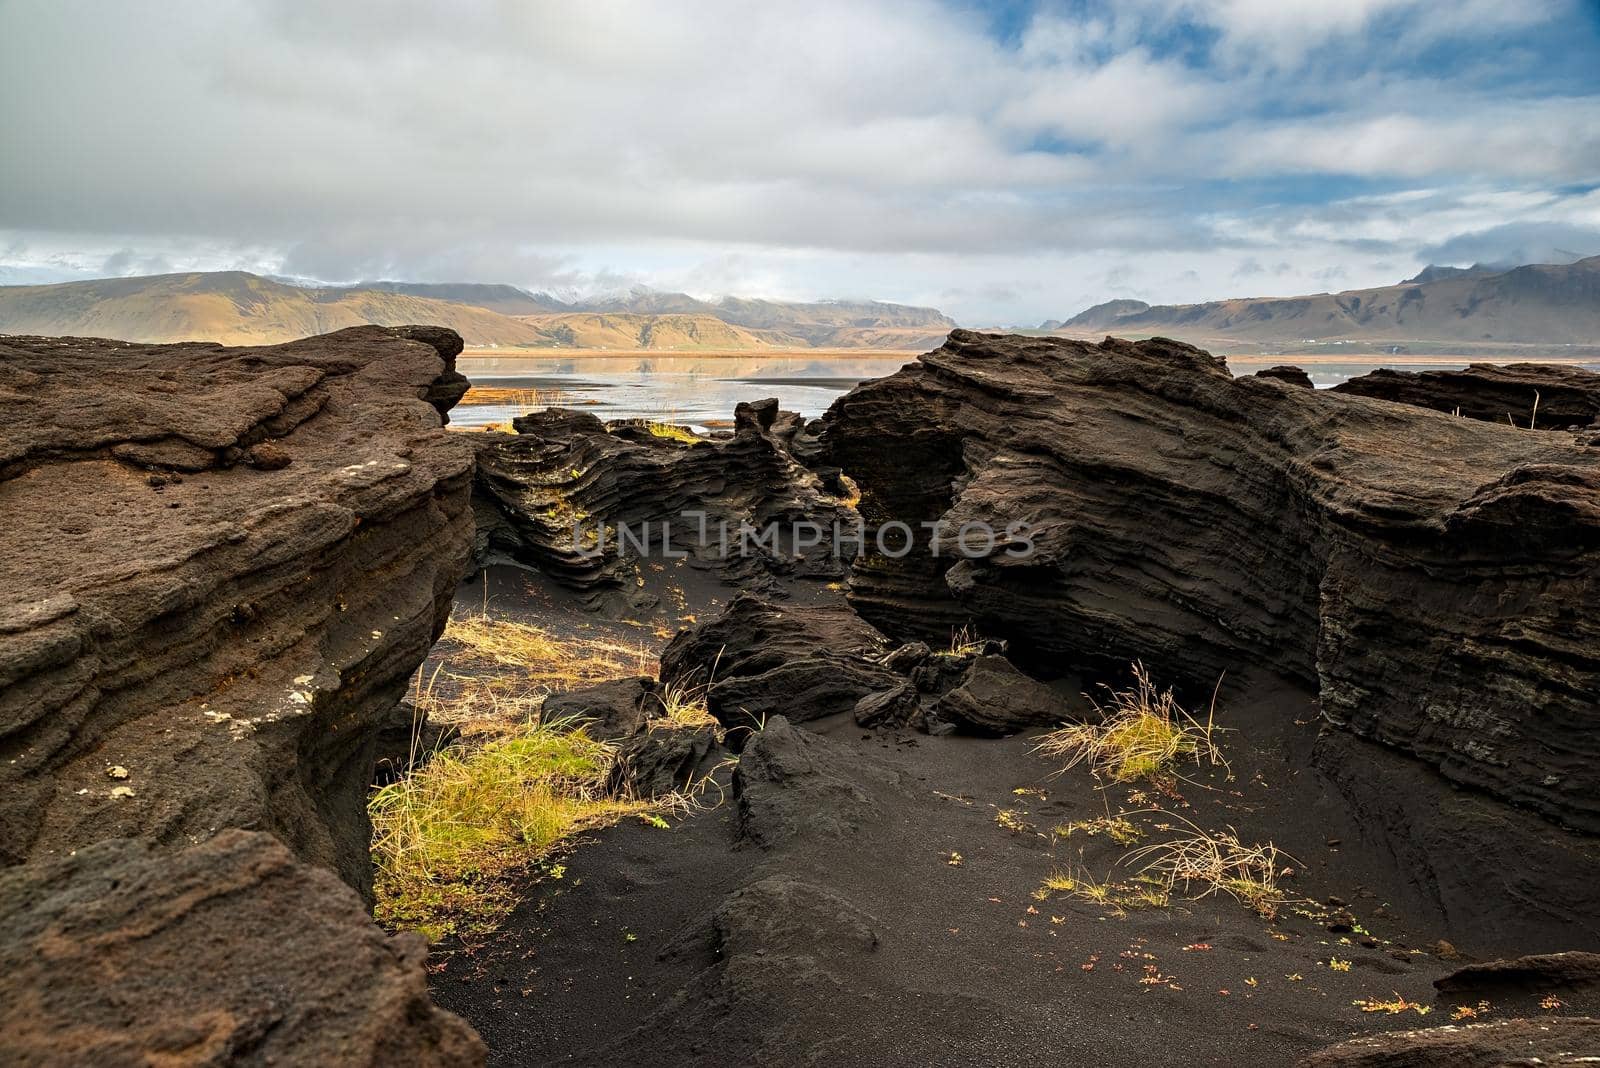 Volcanic rock formation near Dyrholaey, Iceland by LuigiMorbidelli